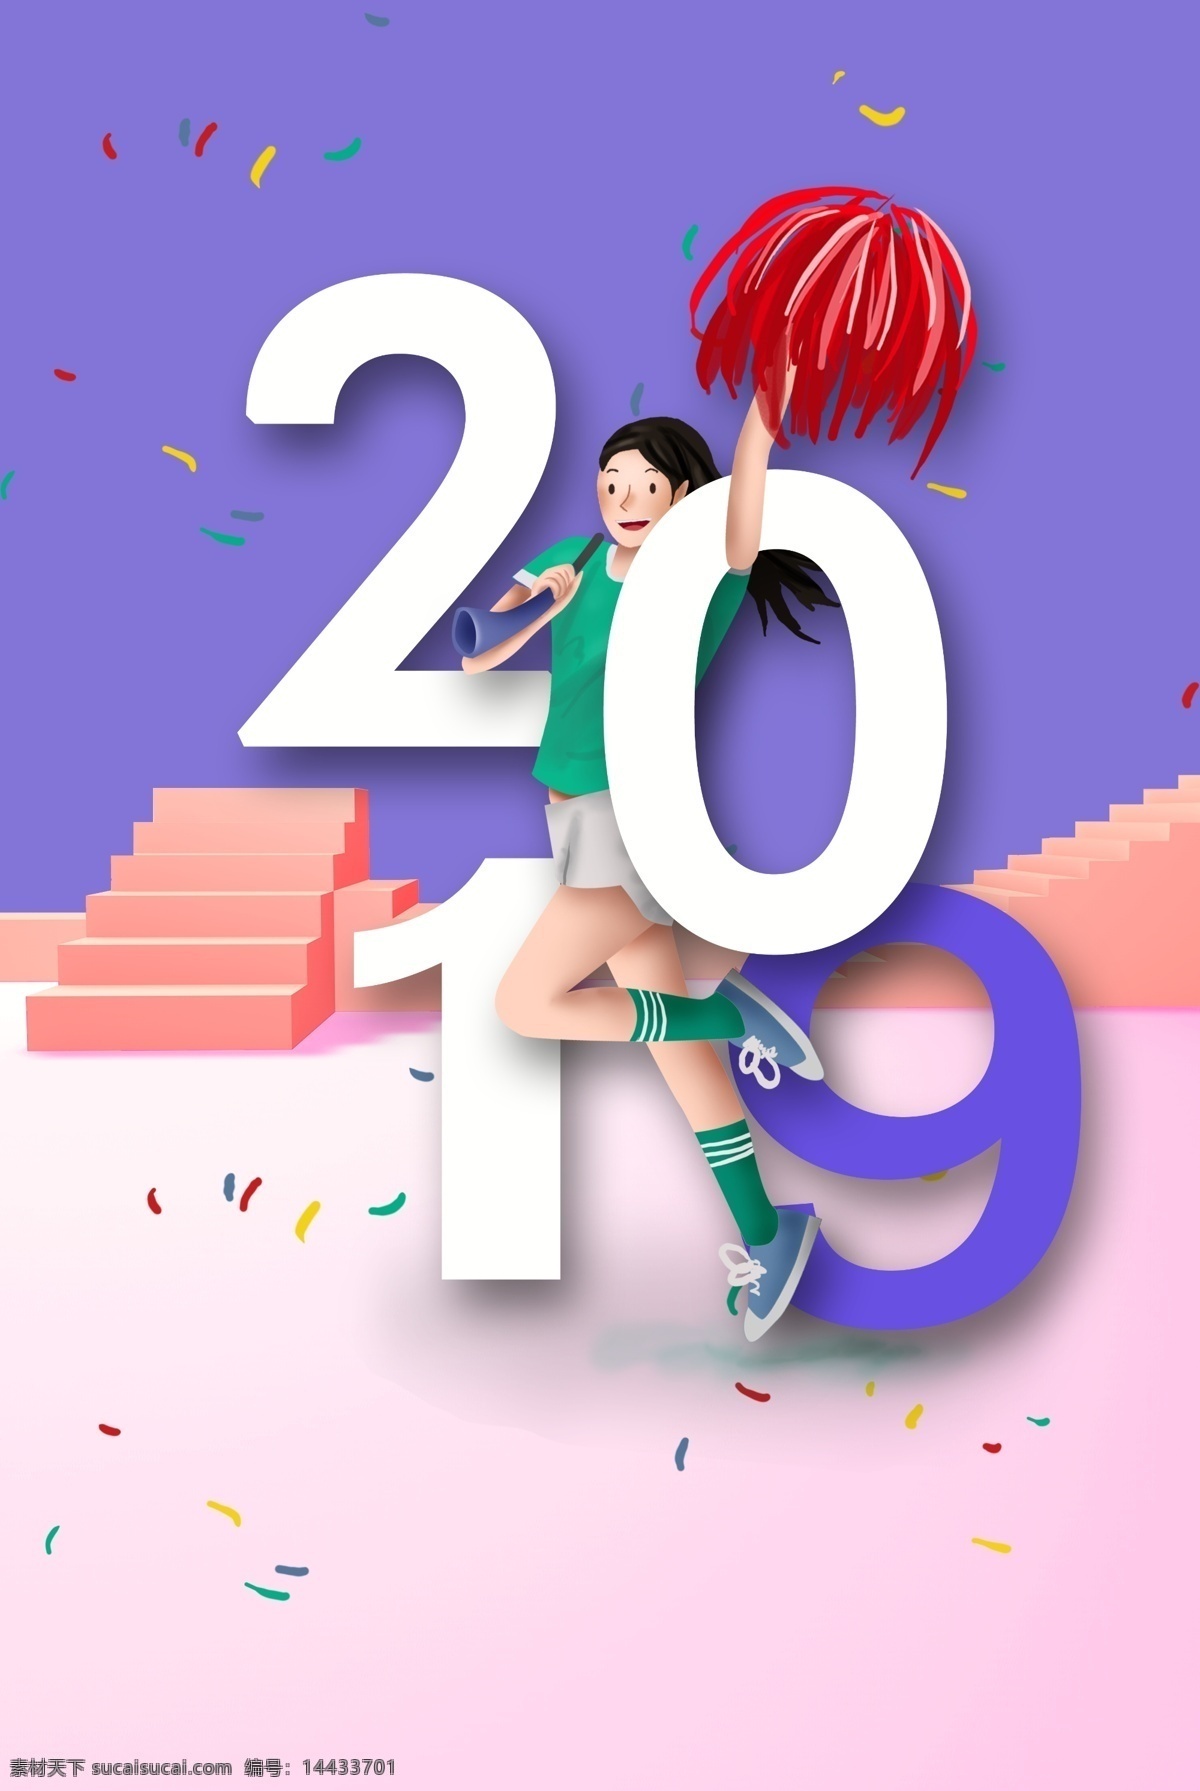 加油 2019 热 舞 拉拉队 女孩 立体 海报 背景 热舞 女生 人物 矢量 助威 鼓劲 热血 校园 紫色 台阶